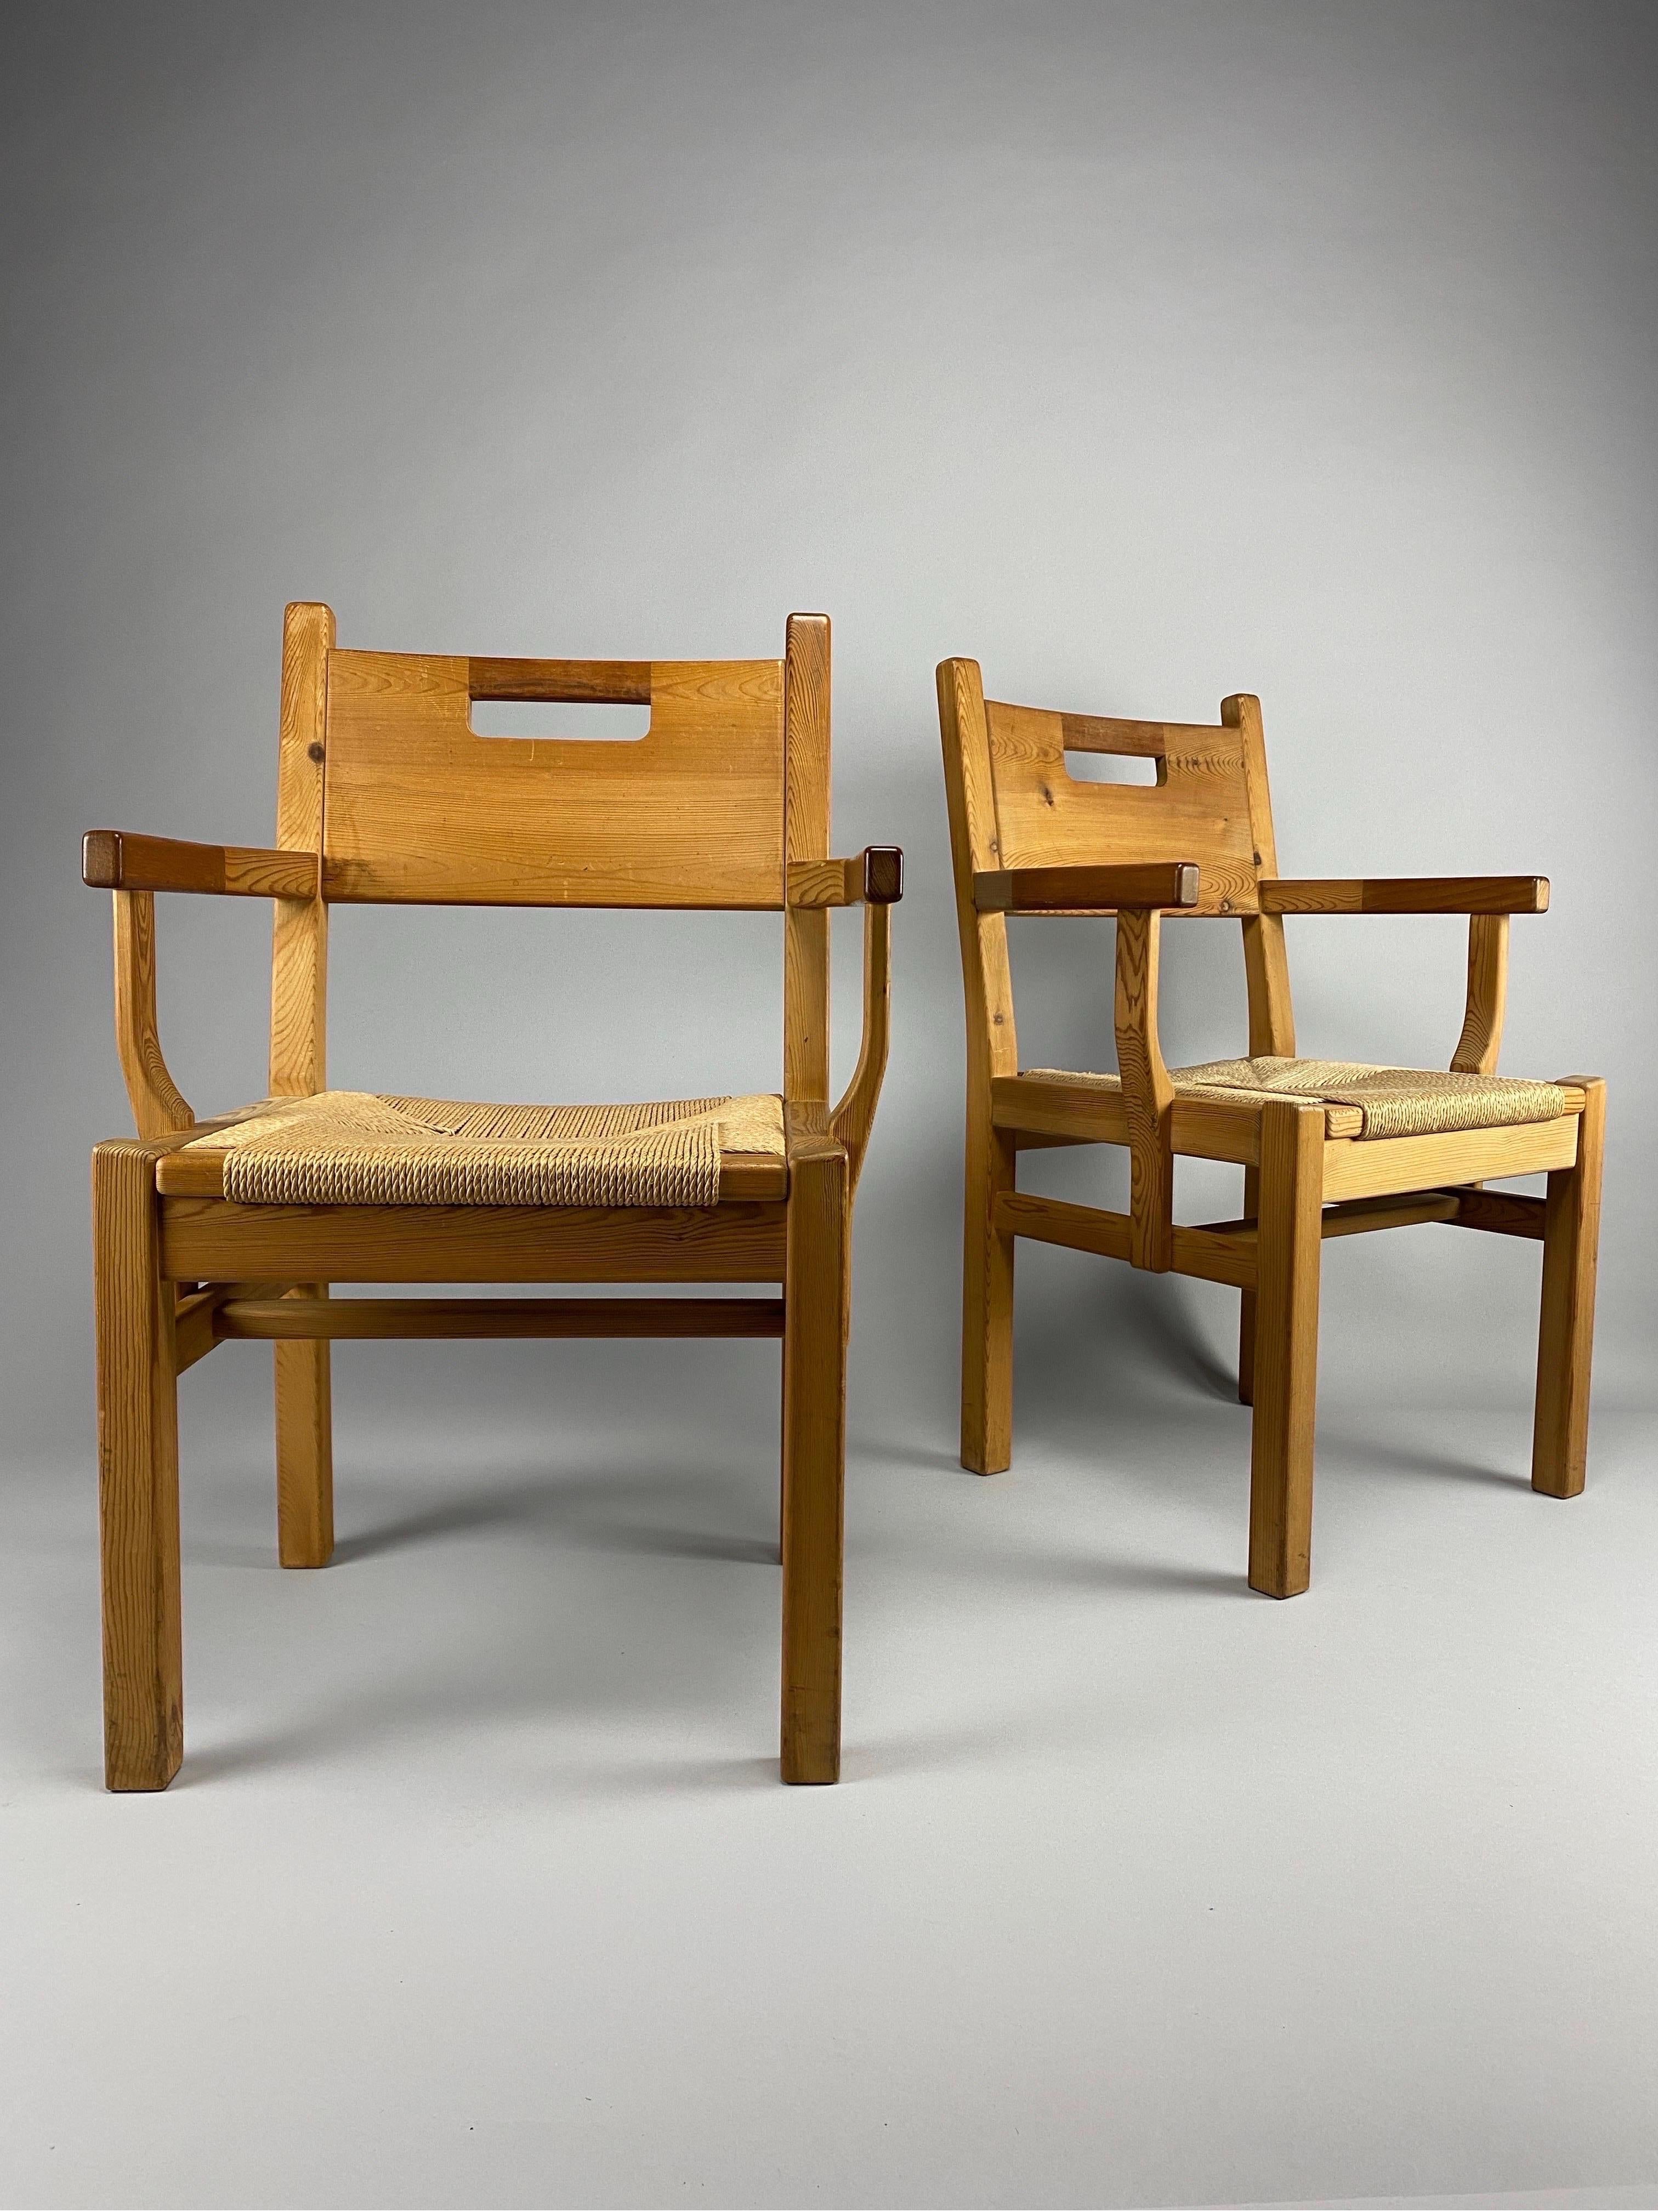 Élevez votre espace avec un confort intemporel : Fauteuils scandinaves en pin de Tage Poulsen

Laissez-vous séduire par l'incarnation du design scandinave avec ces fauteuils exquis fabriqués en bois de pin chaud et ornés de sièges en corde de